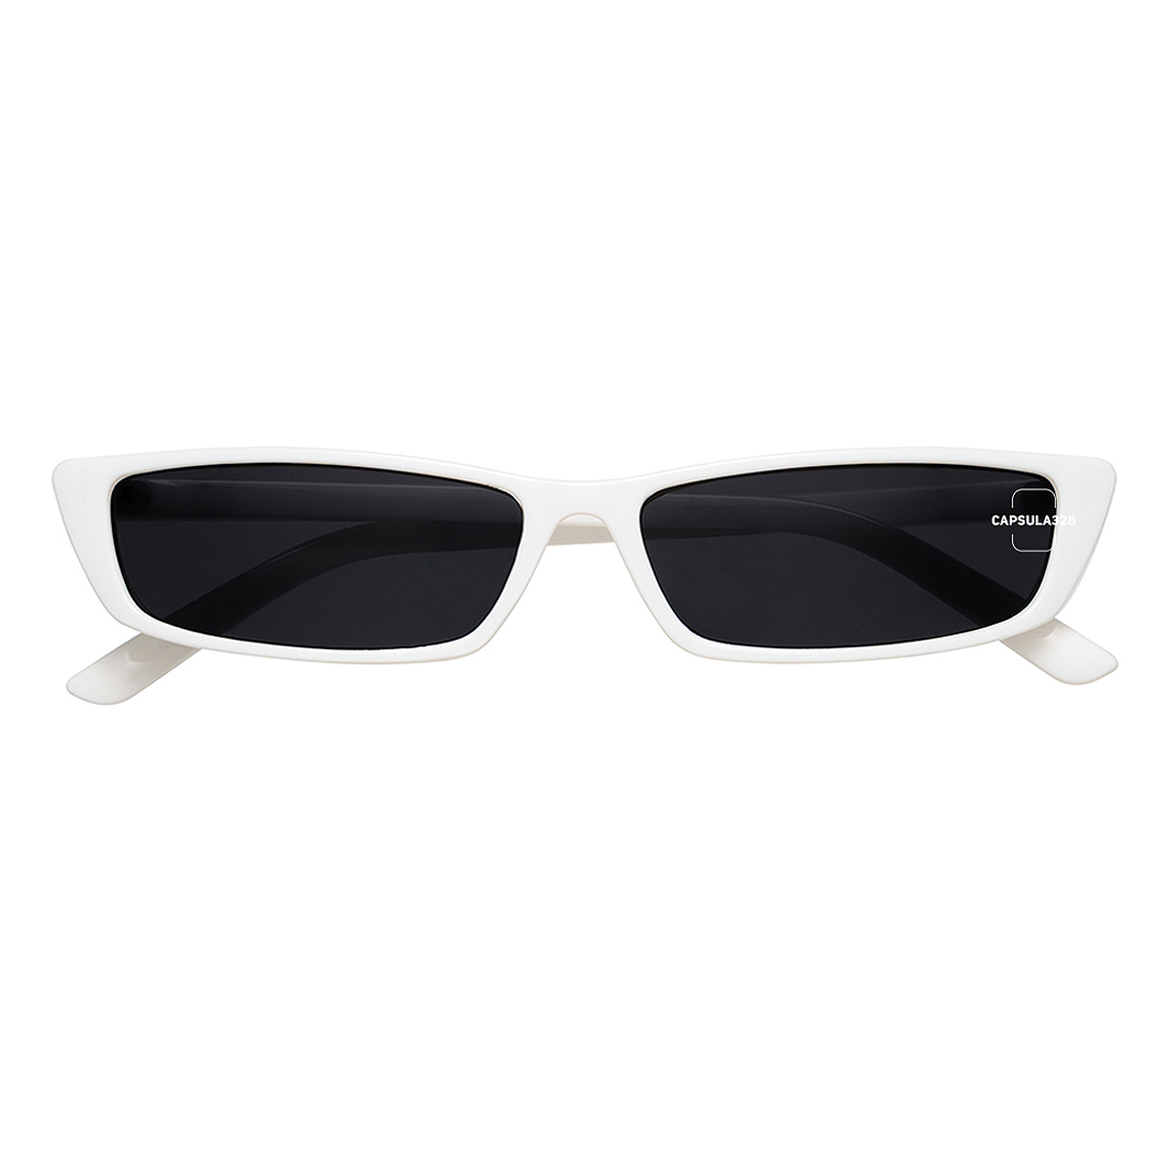 Солнцезащитные очки Seagull 8803